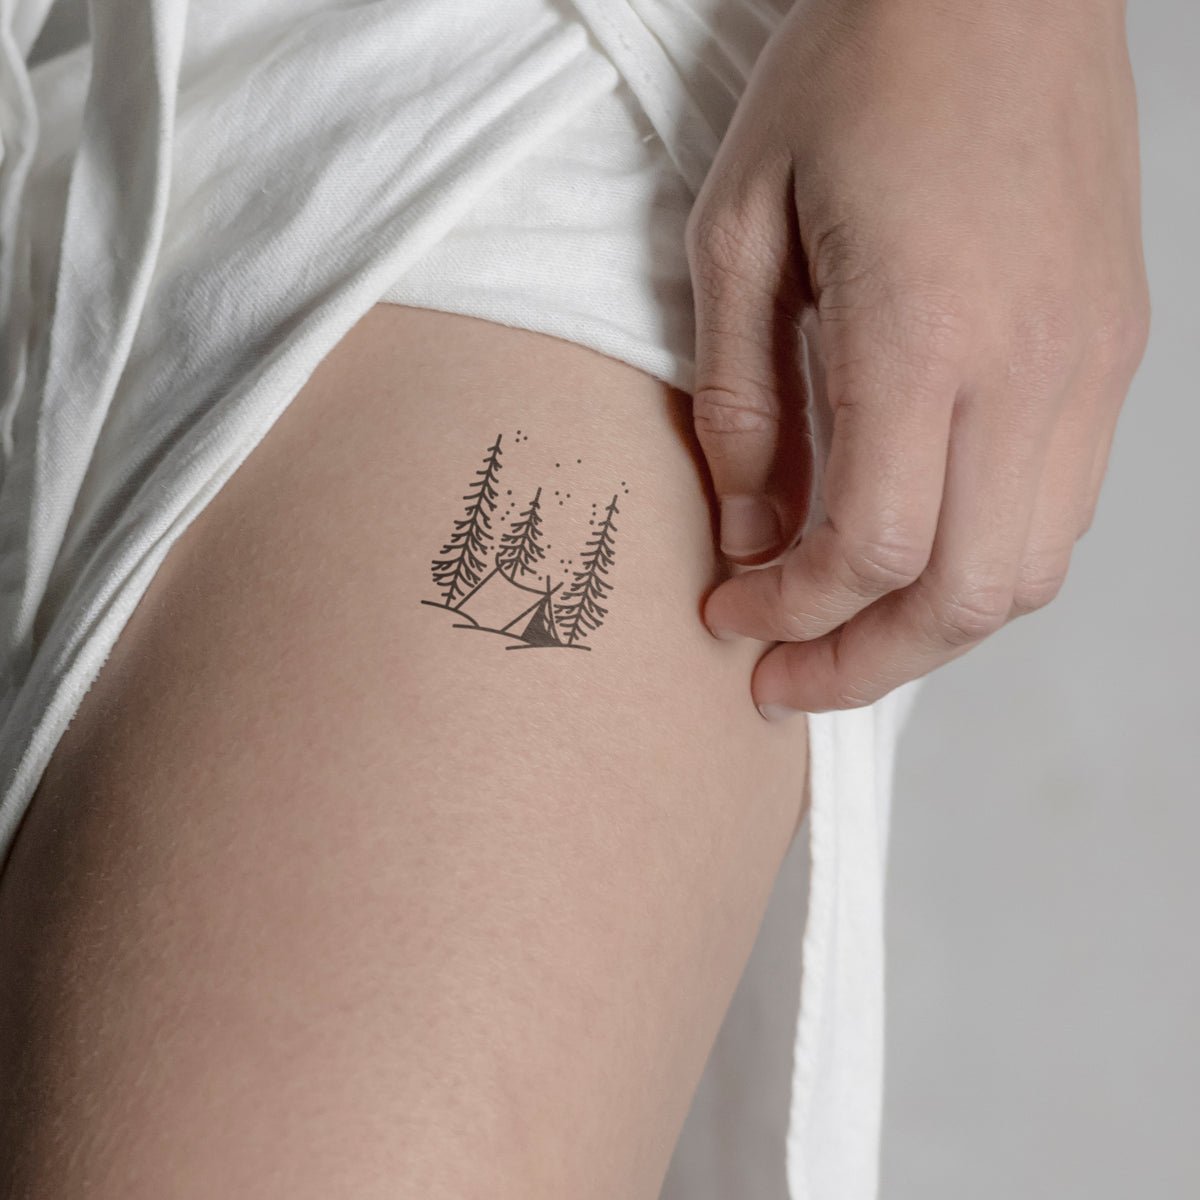 Tiny Tree Temporary Tattoo - Etsy